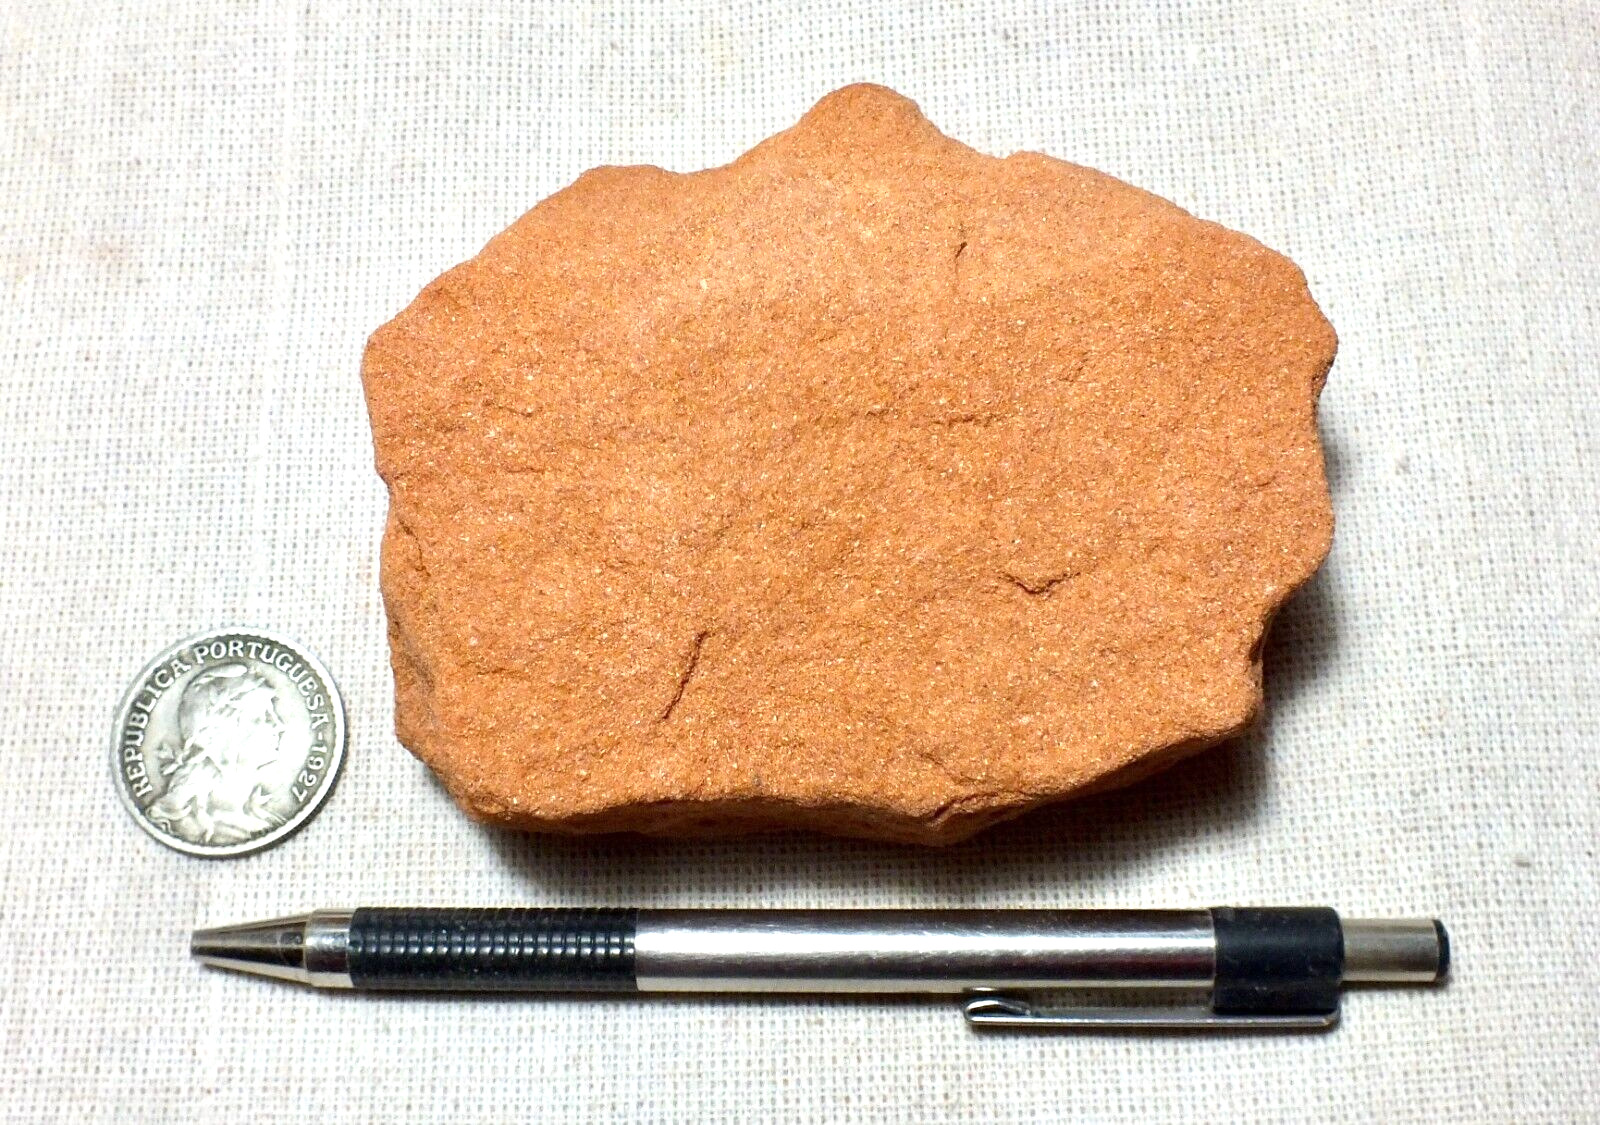 sandstone - Navajo Sandstone - hand specimen of an aeolian sandstone